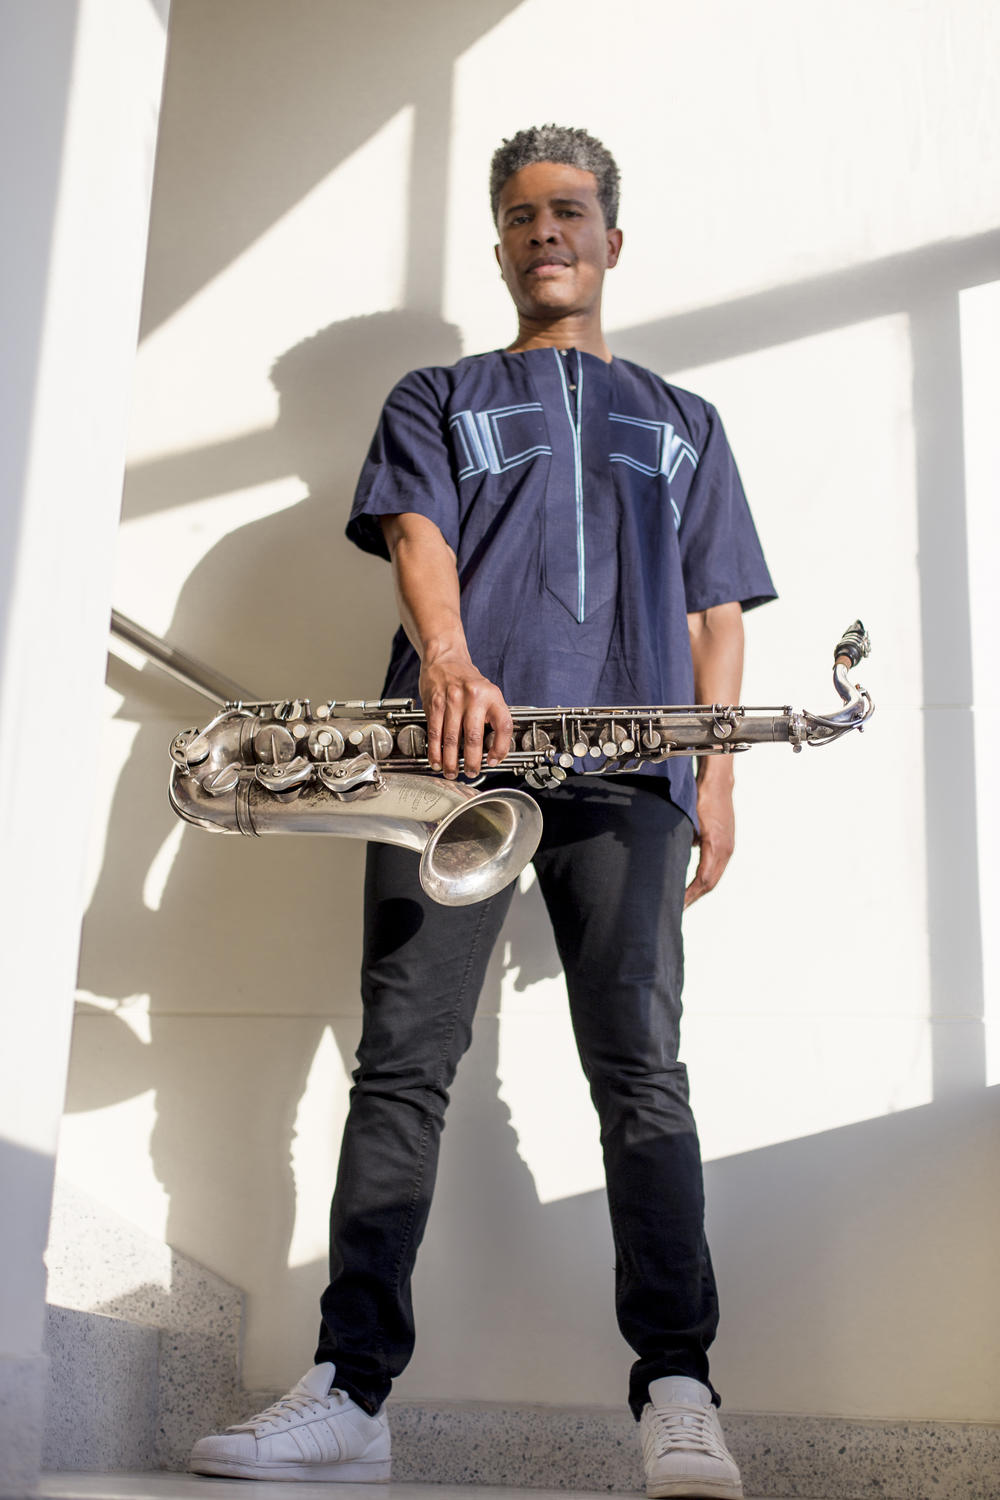 Jazz Saxophonist David SÃ¡nchez 